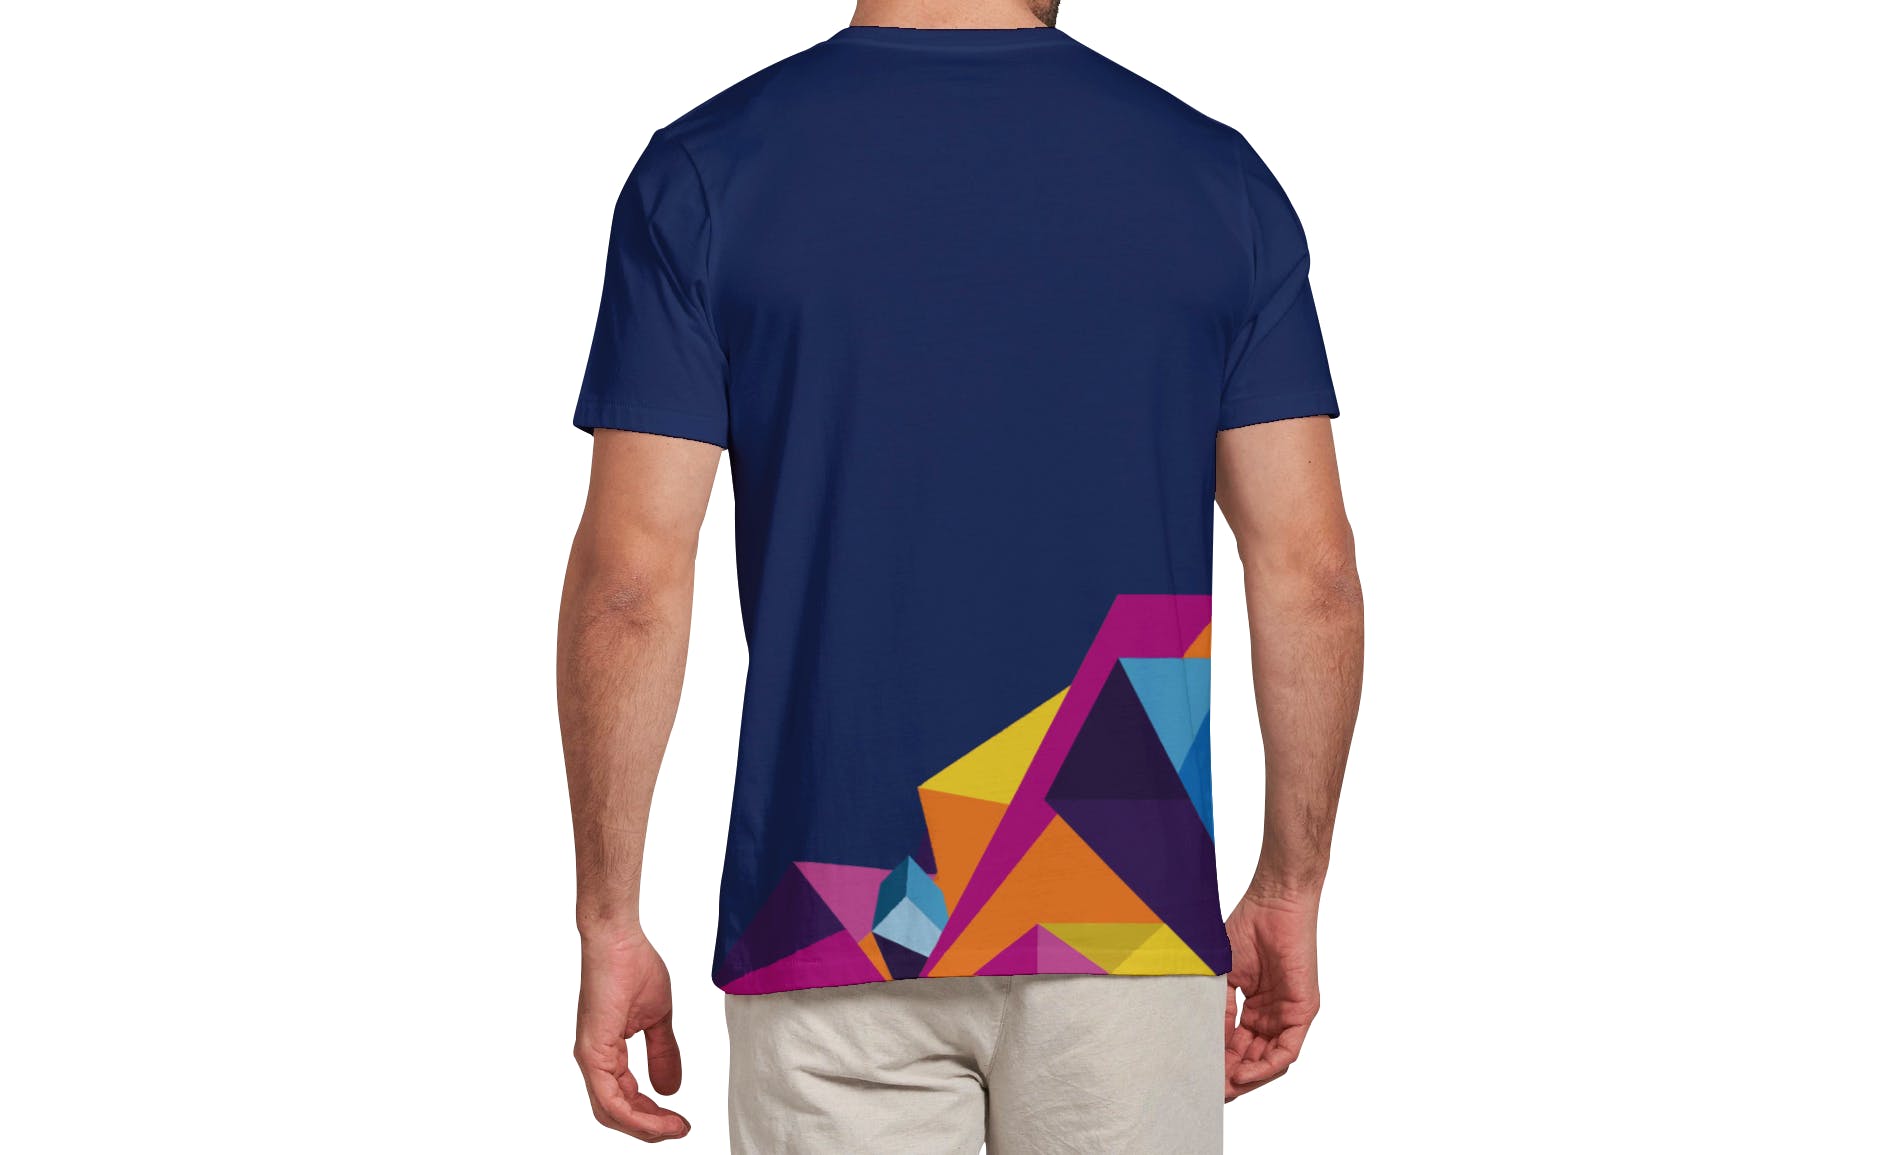 男士T恤印花设计效果图样机大洋岛精选v03 T-shirt Mockup Vol 03插图12